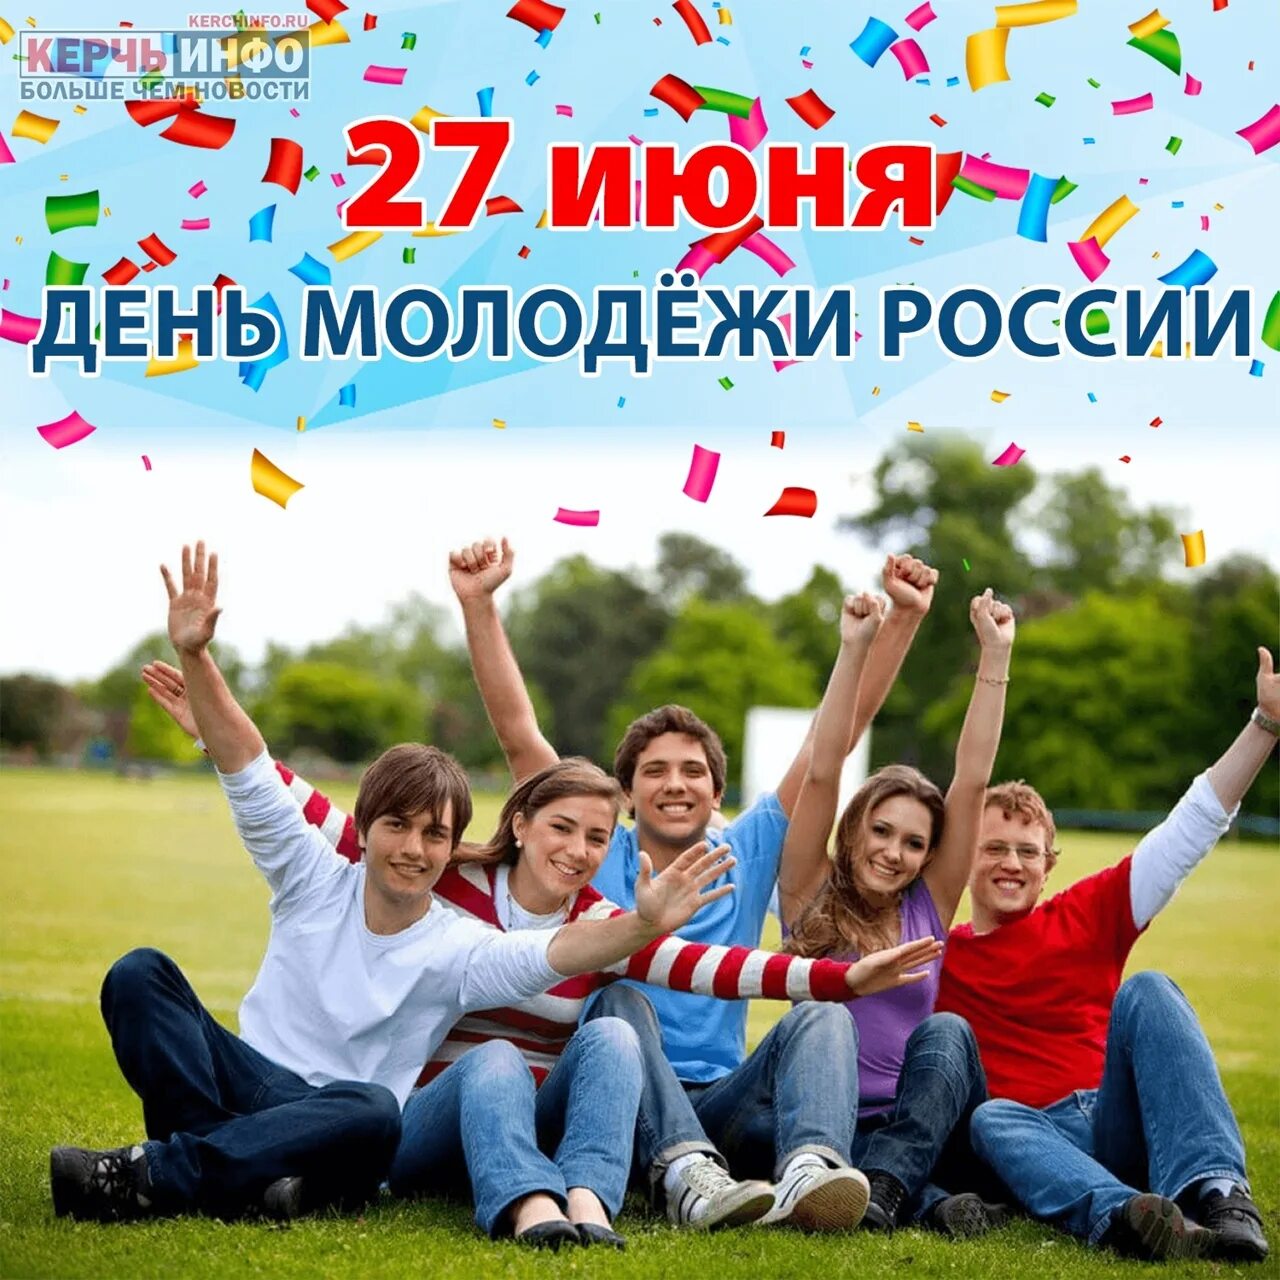 Июнь день молодежи. С днем молодежи. День молодёжи (Россия). С праздником молодежи. 27 Июня день молодежи России.